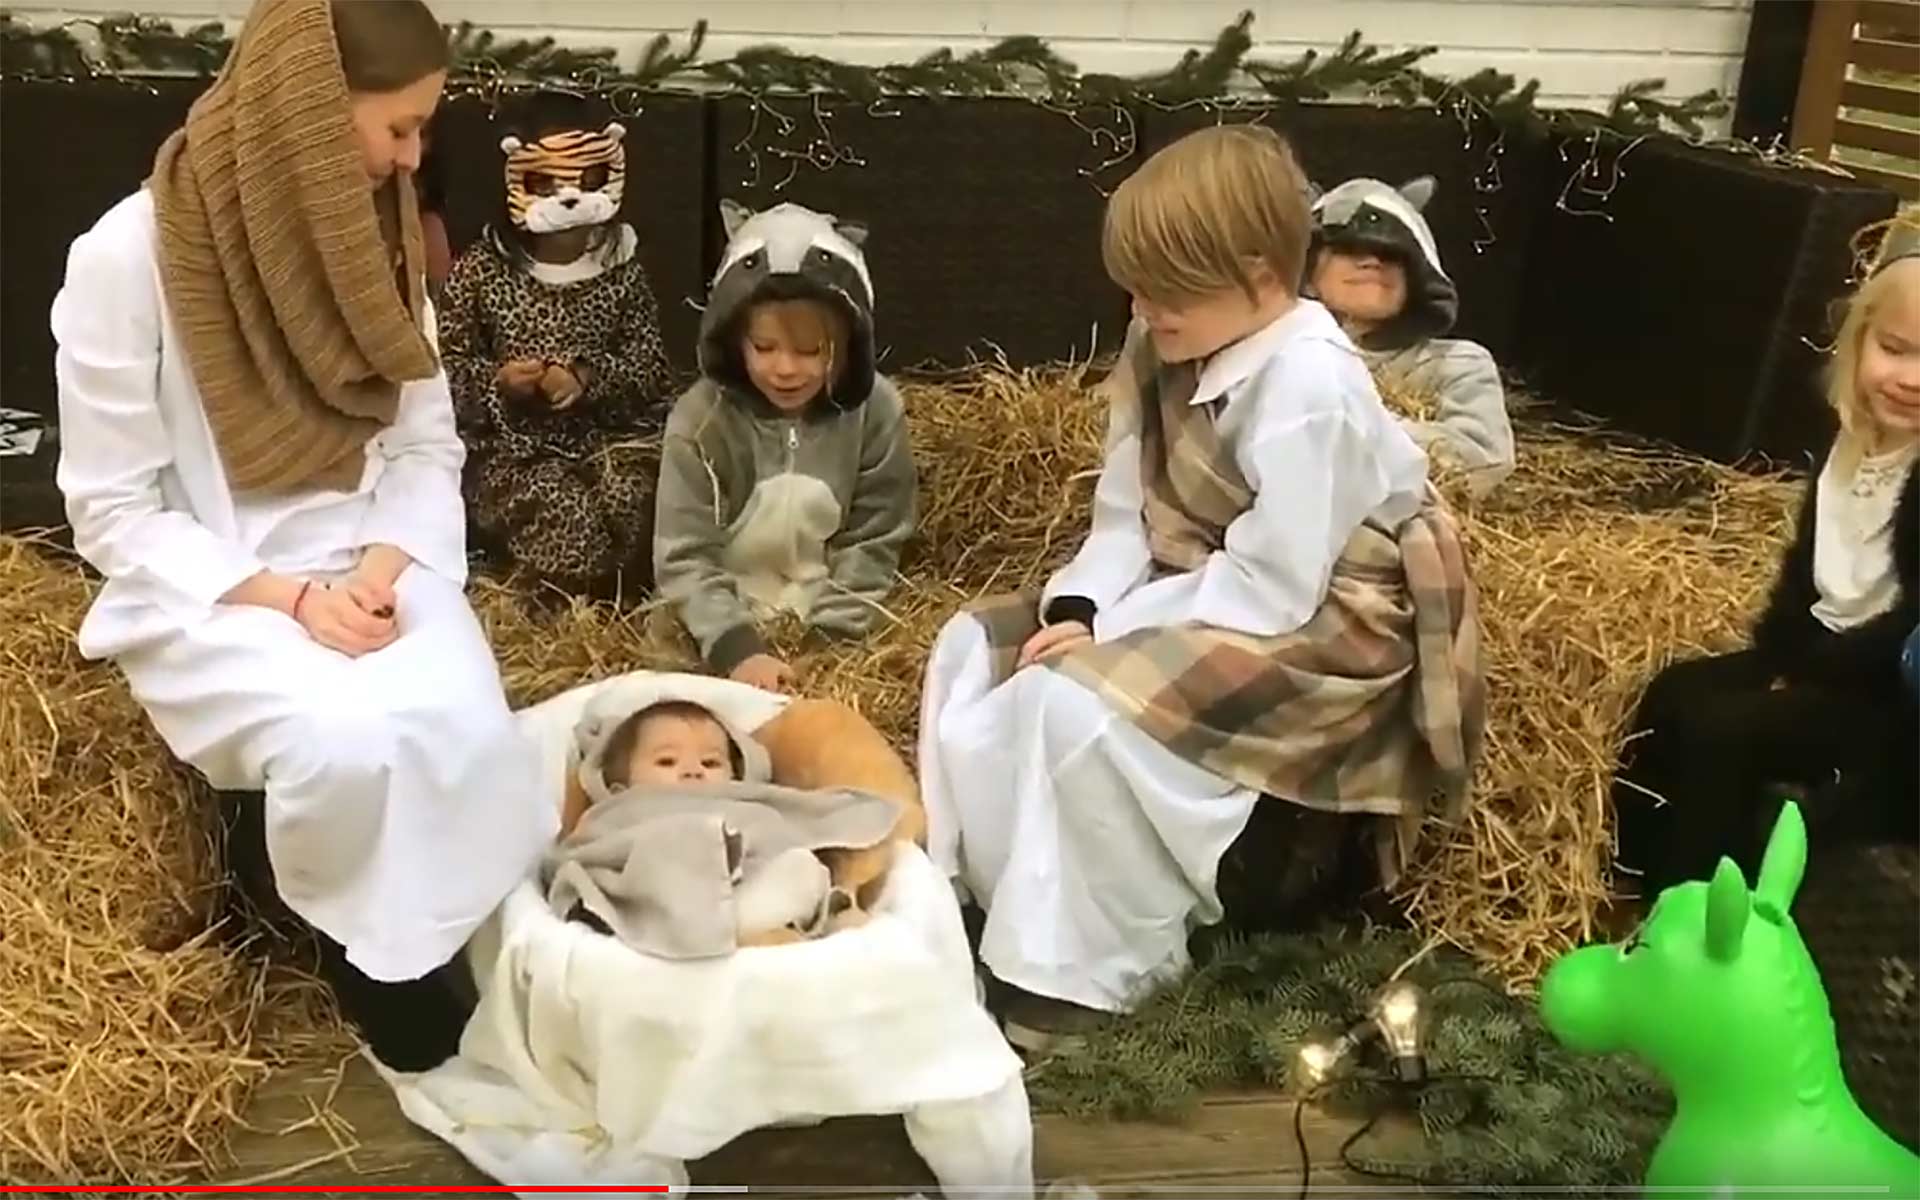 Gör en ”Christmas Story” från barnens perspektiv